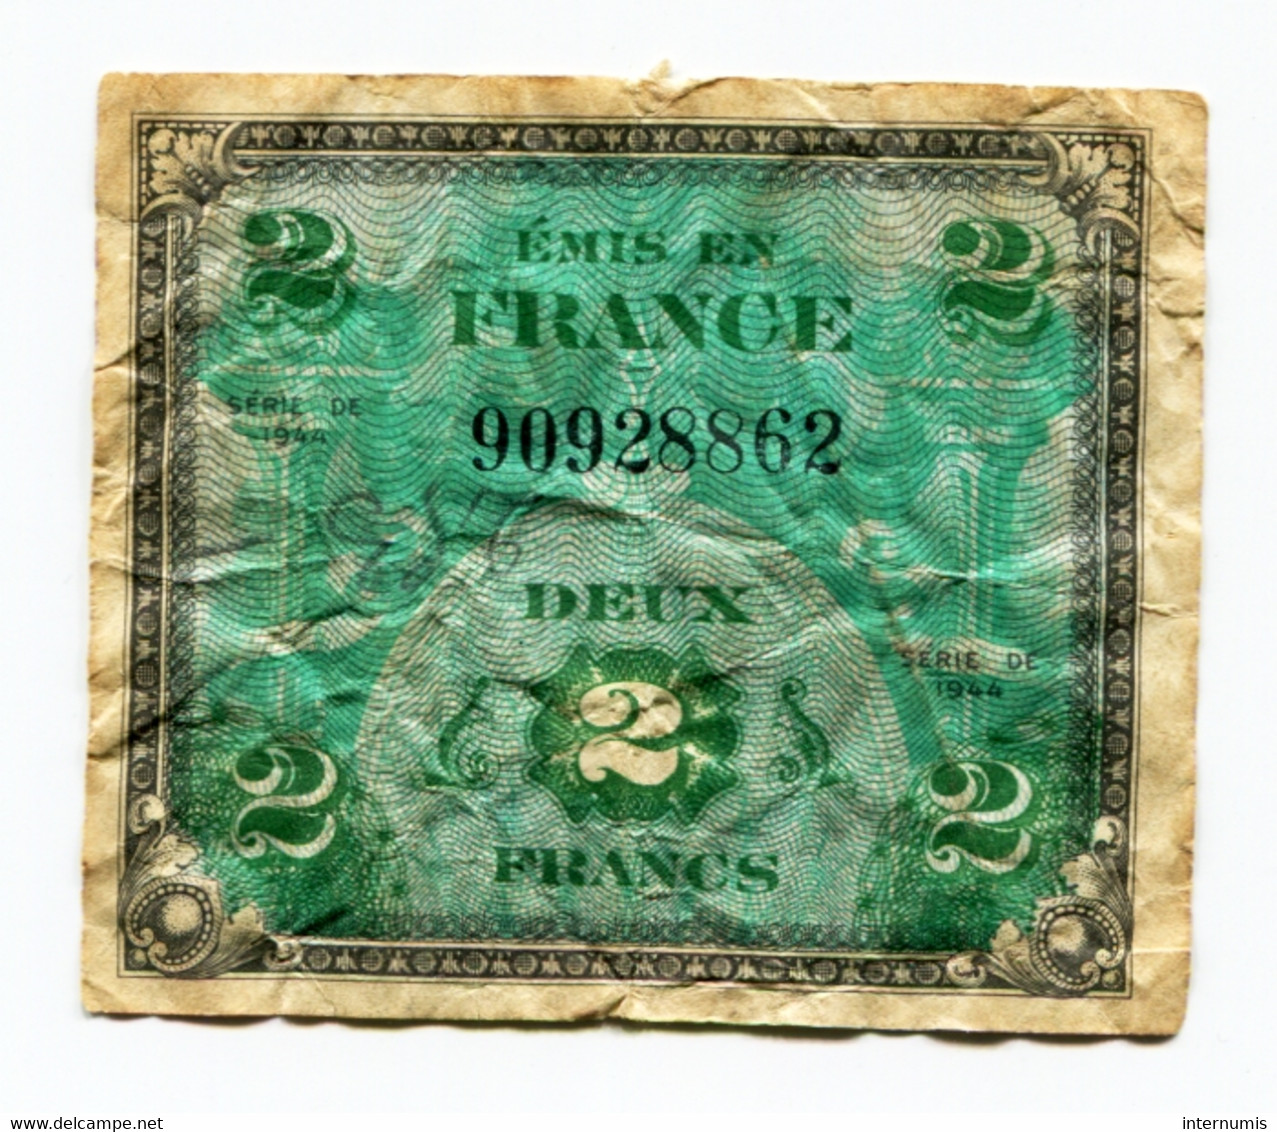 France, 2 Francs, DRAPEAU Sans Série, TYPE DE 1944, N° : 90928862, B (VG), VF.16.01 - 1944 Flag/France